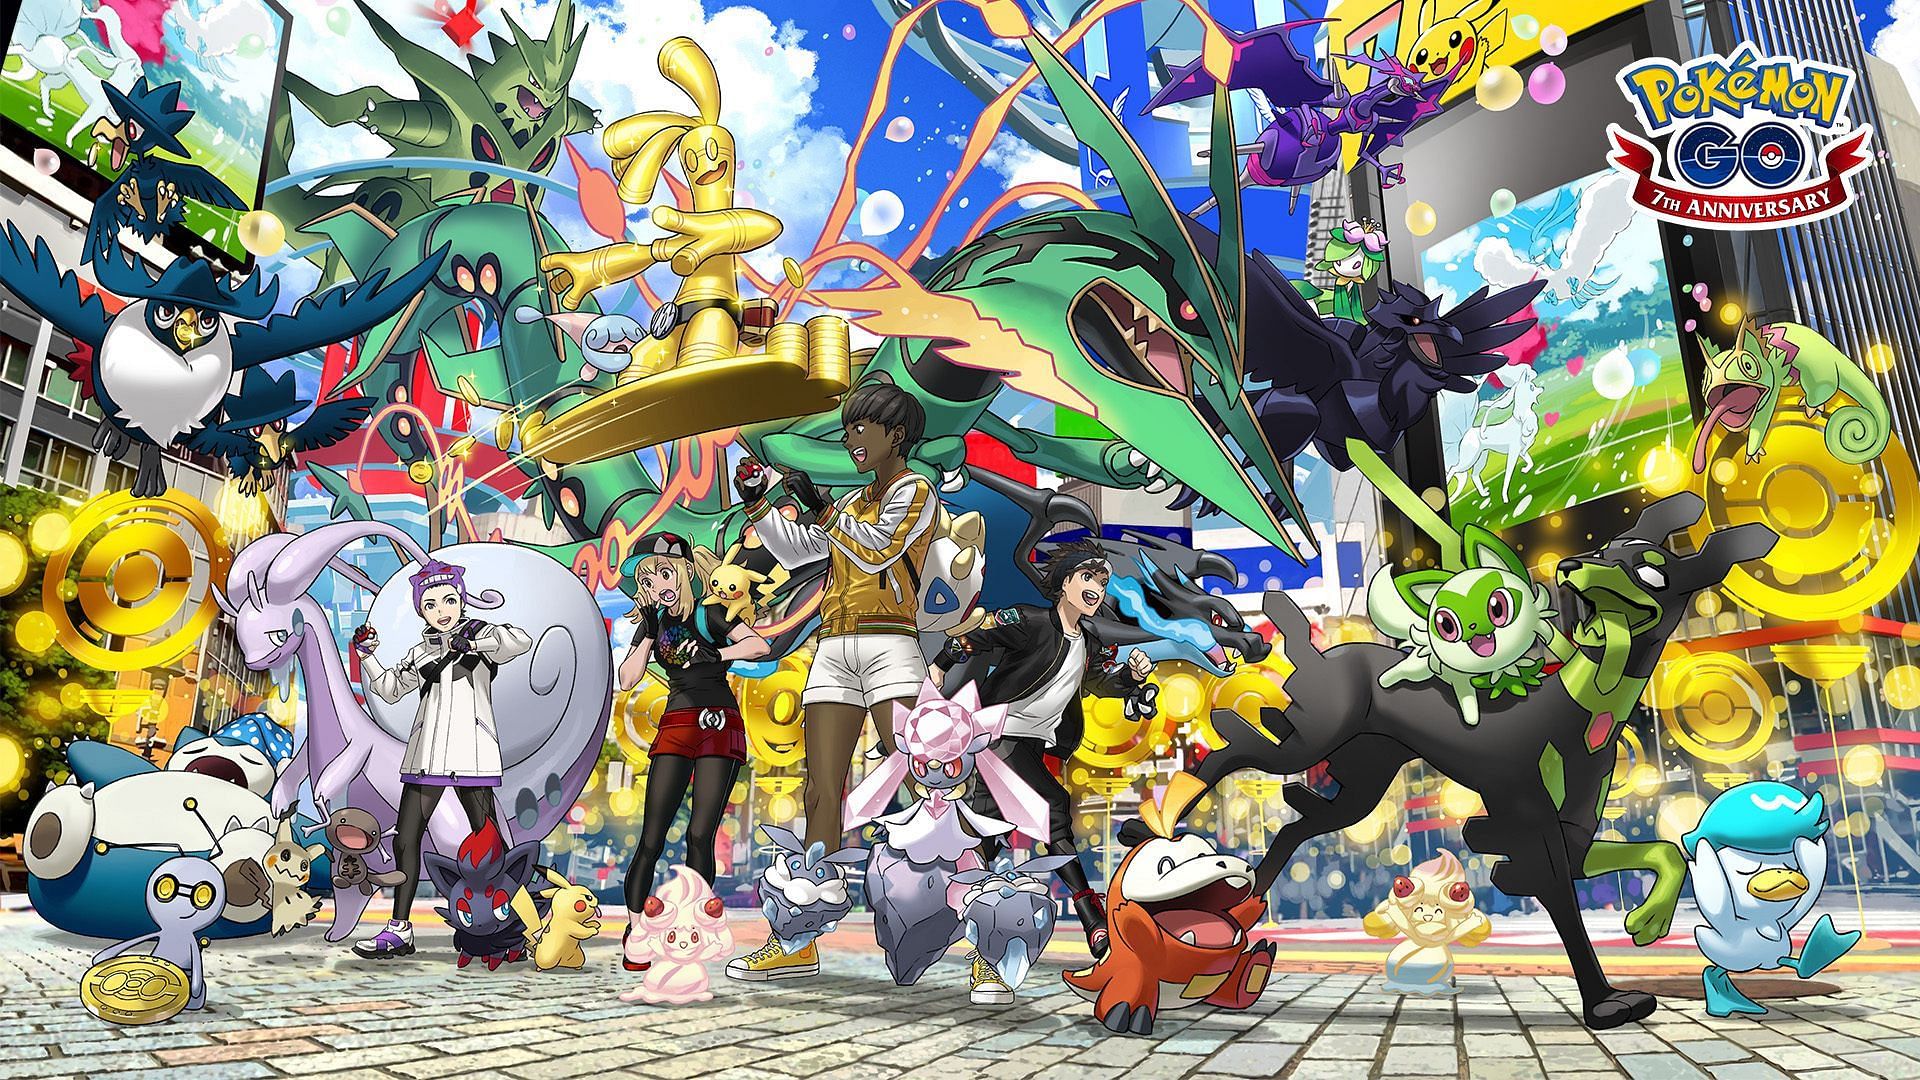 Pokémon Go ultra rewards: Shiny Mewtwo, regionals, and Generation